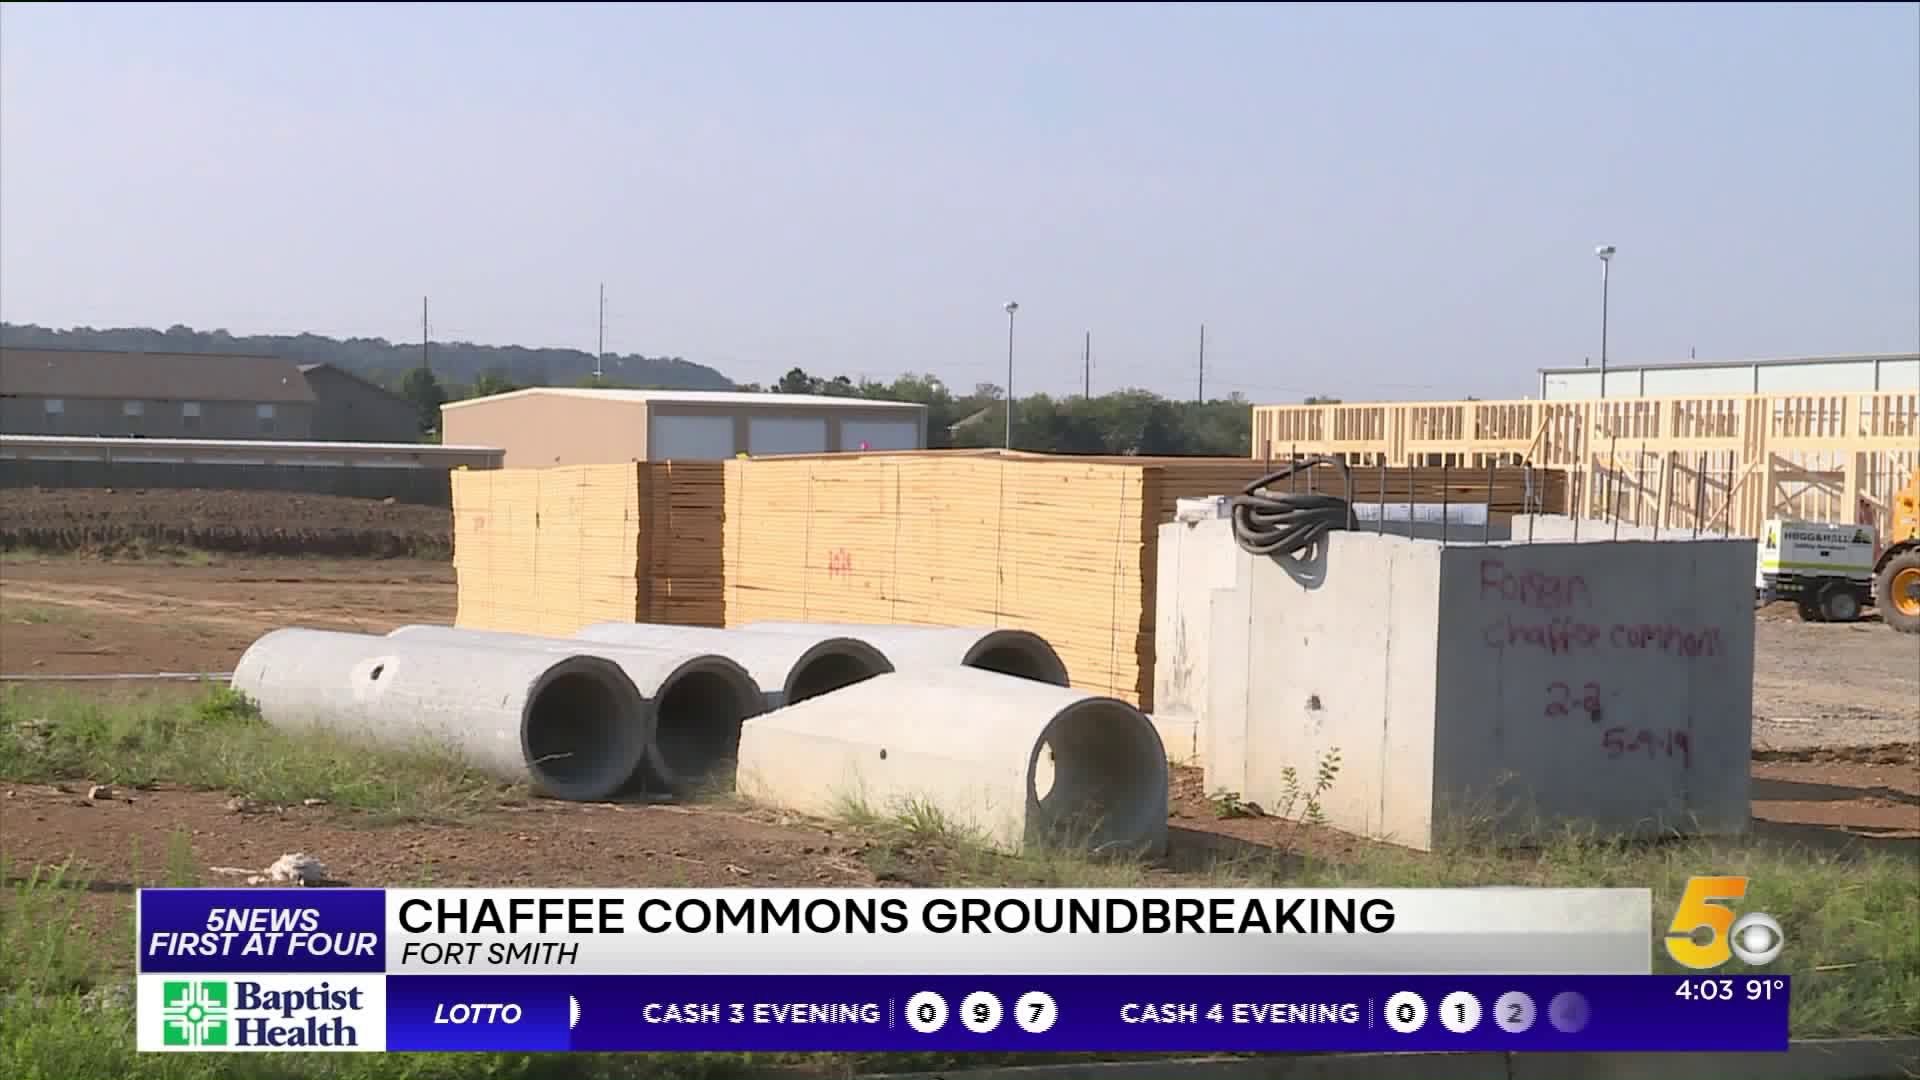 Chaffee Commons Groundbreaking